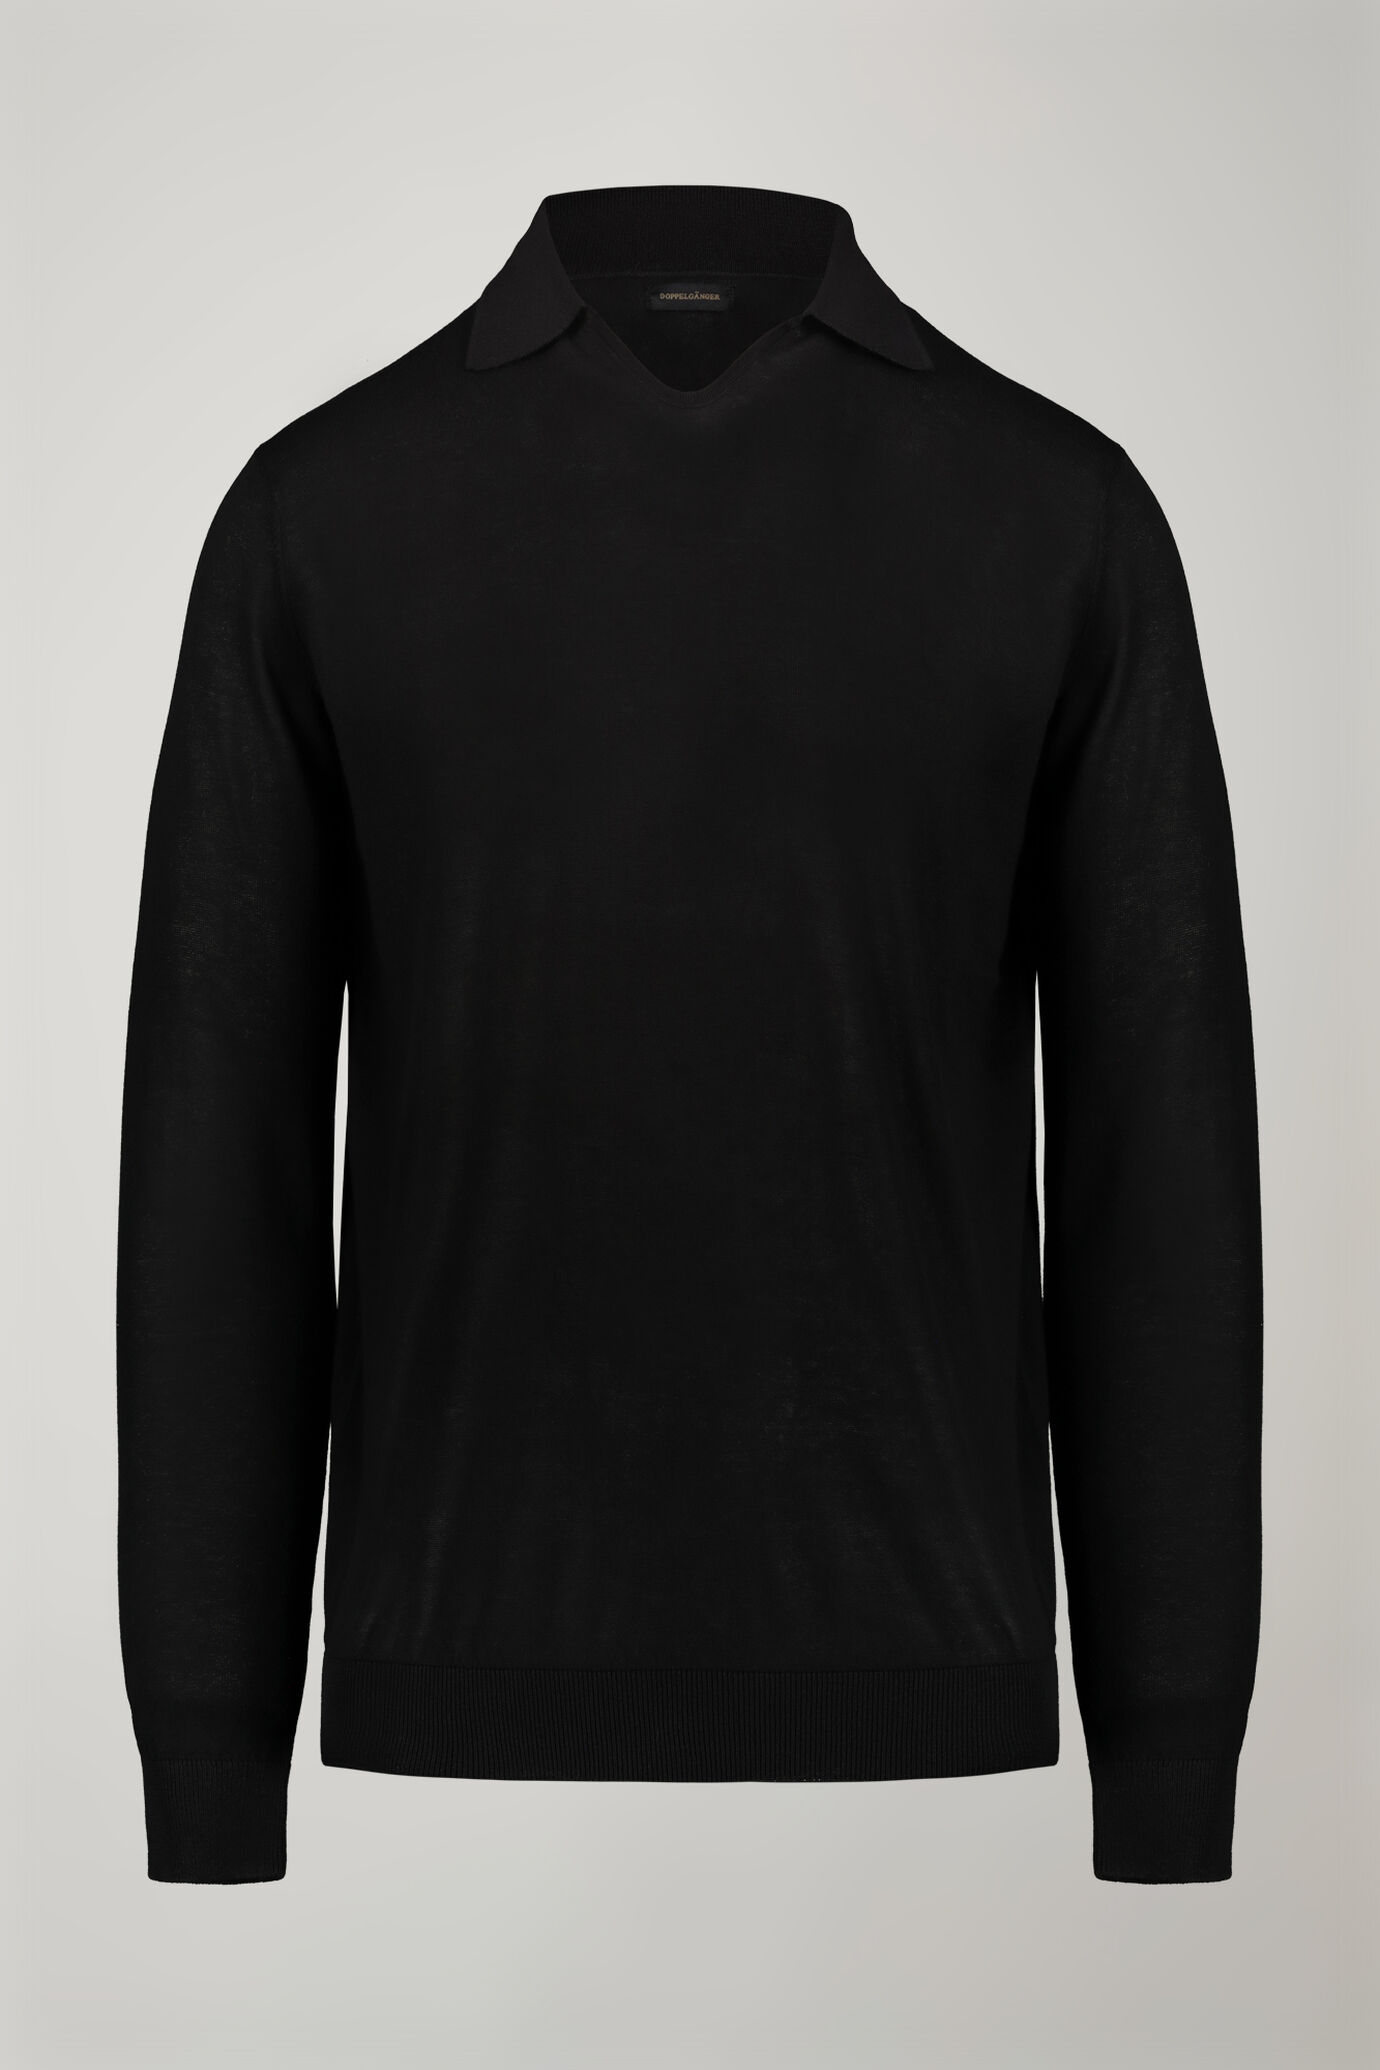 Herren-Poloshirt mit V-Ausschnitt aus 100 % Baumwollstrick und langen Ärmeln in normaler Passform image number 6